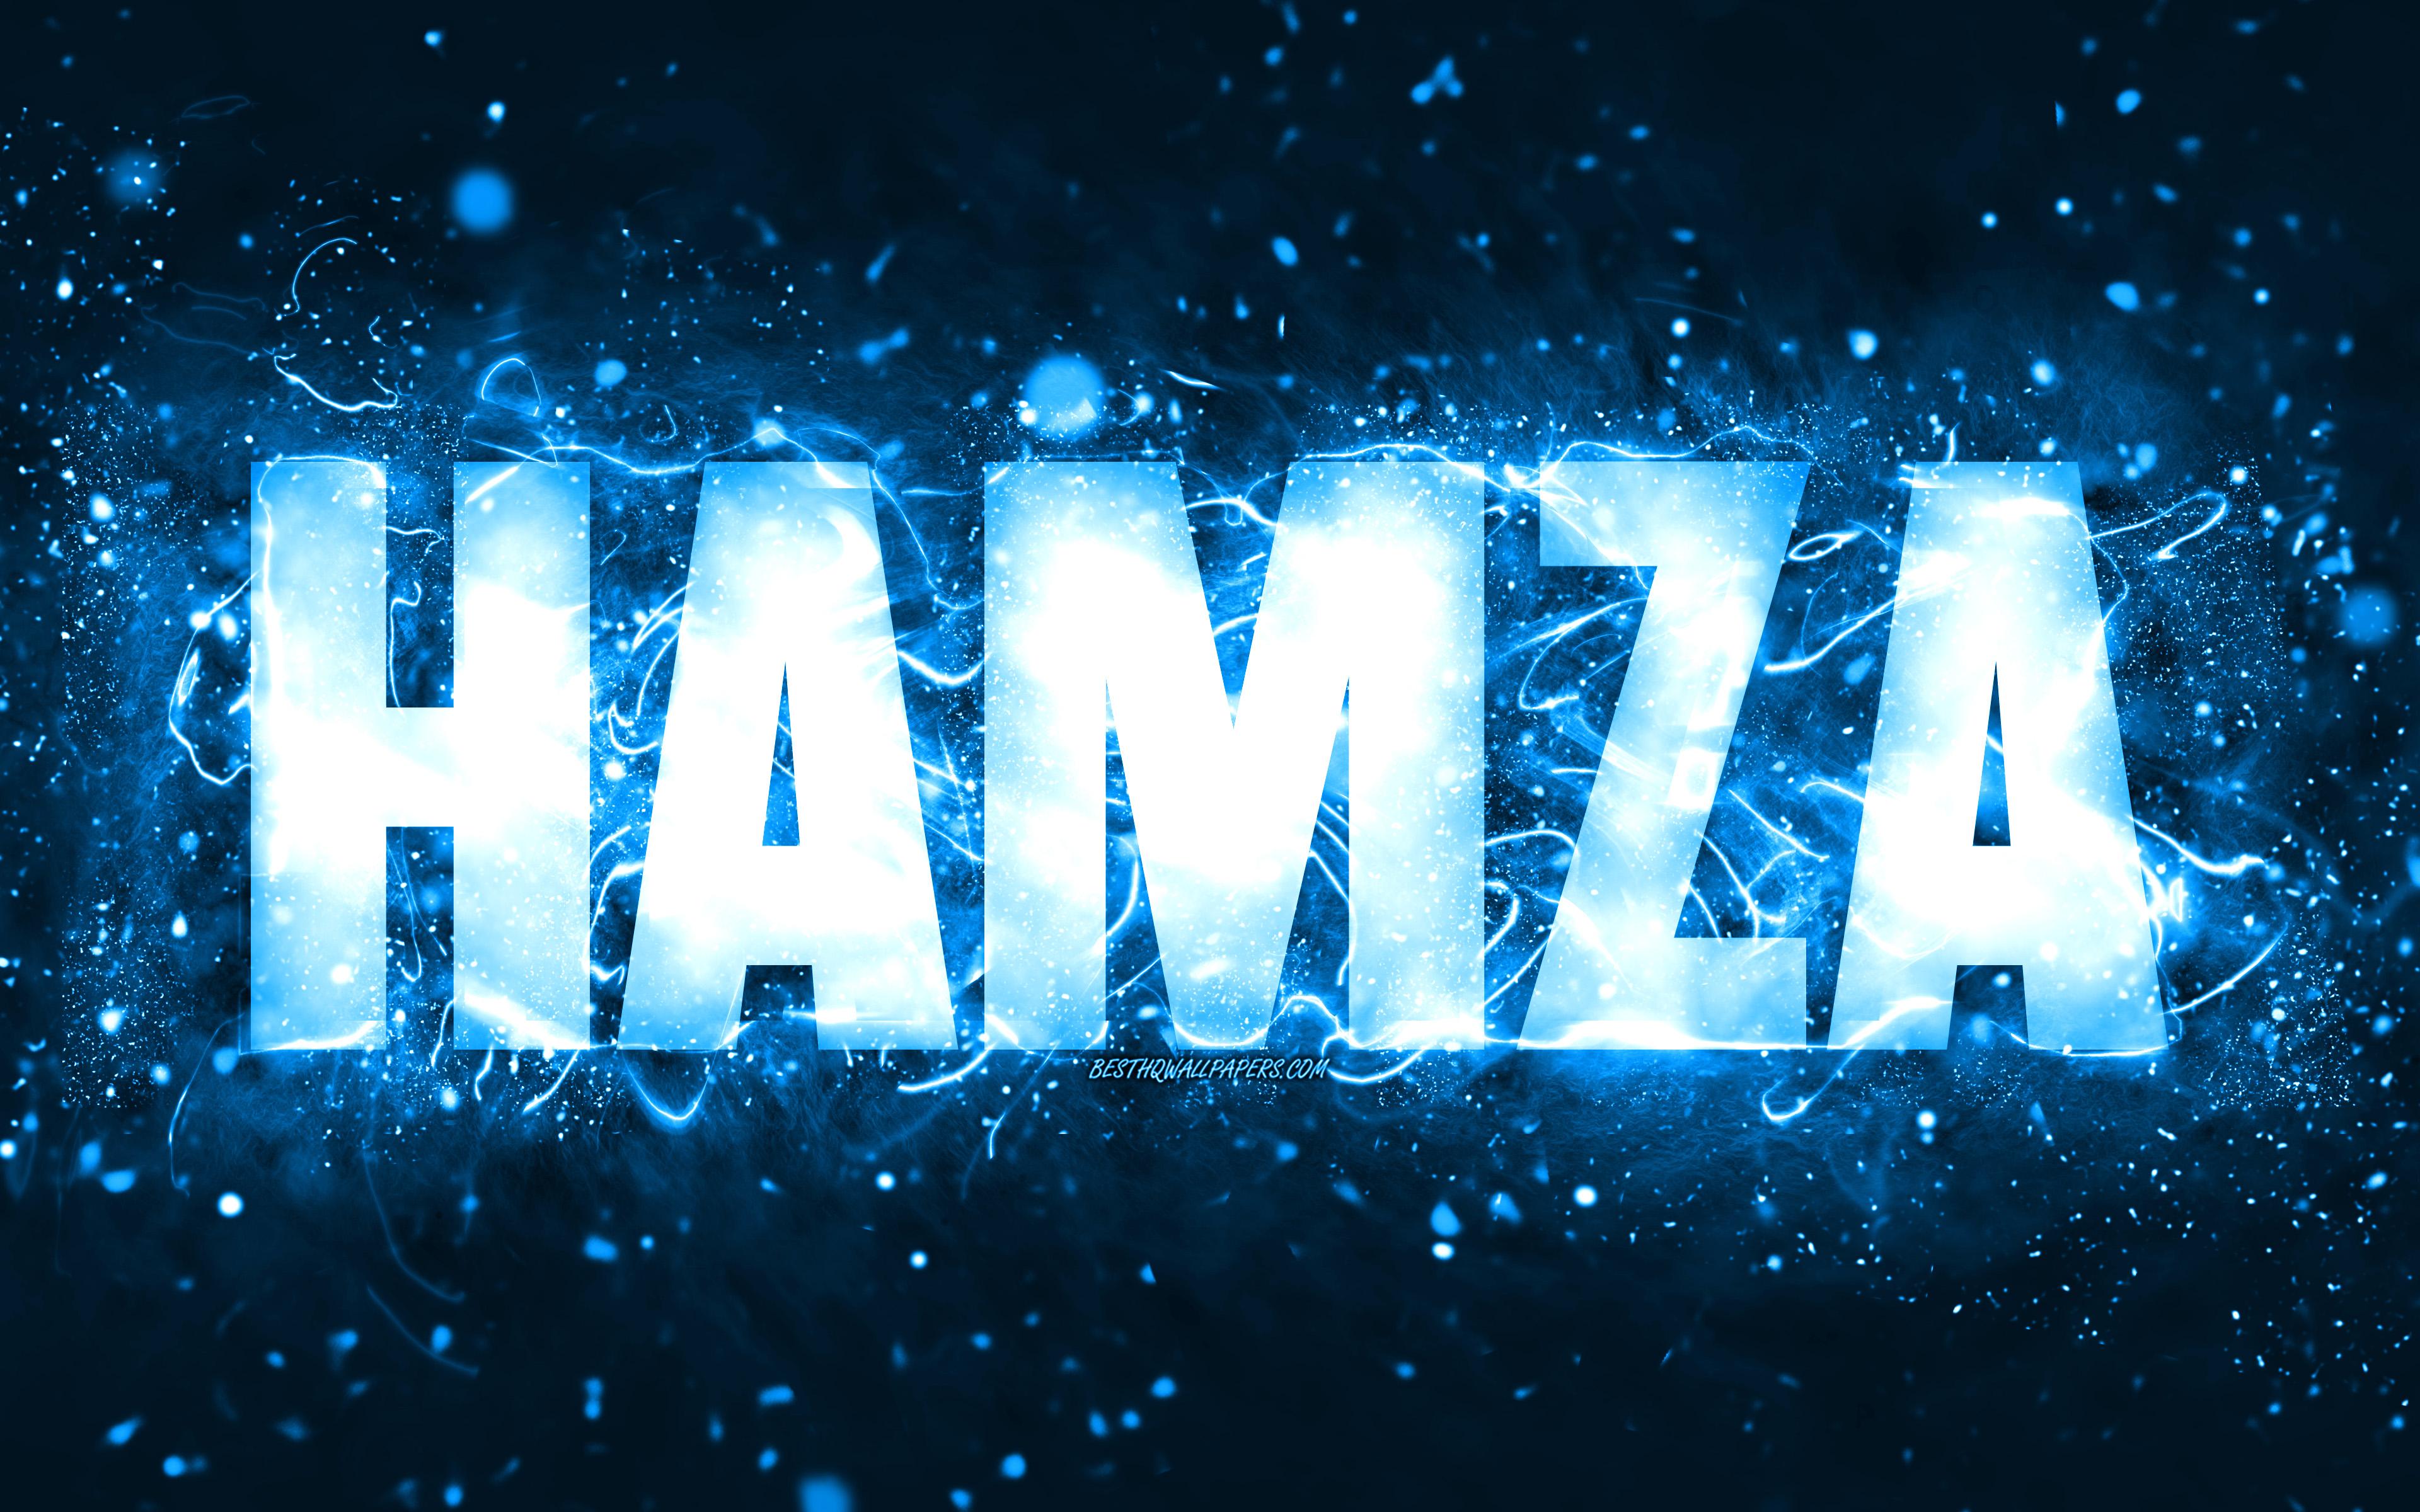 hamza logo wallpaper